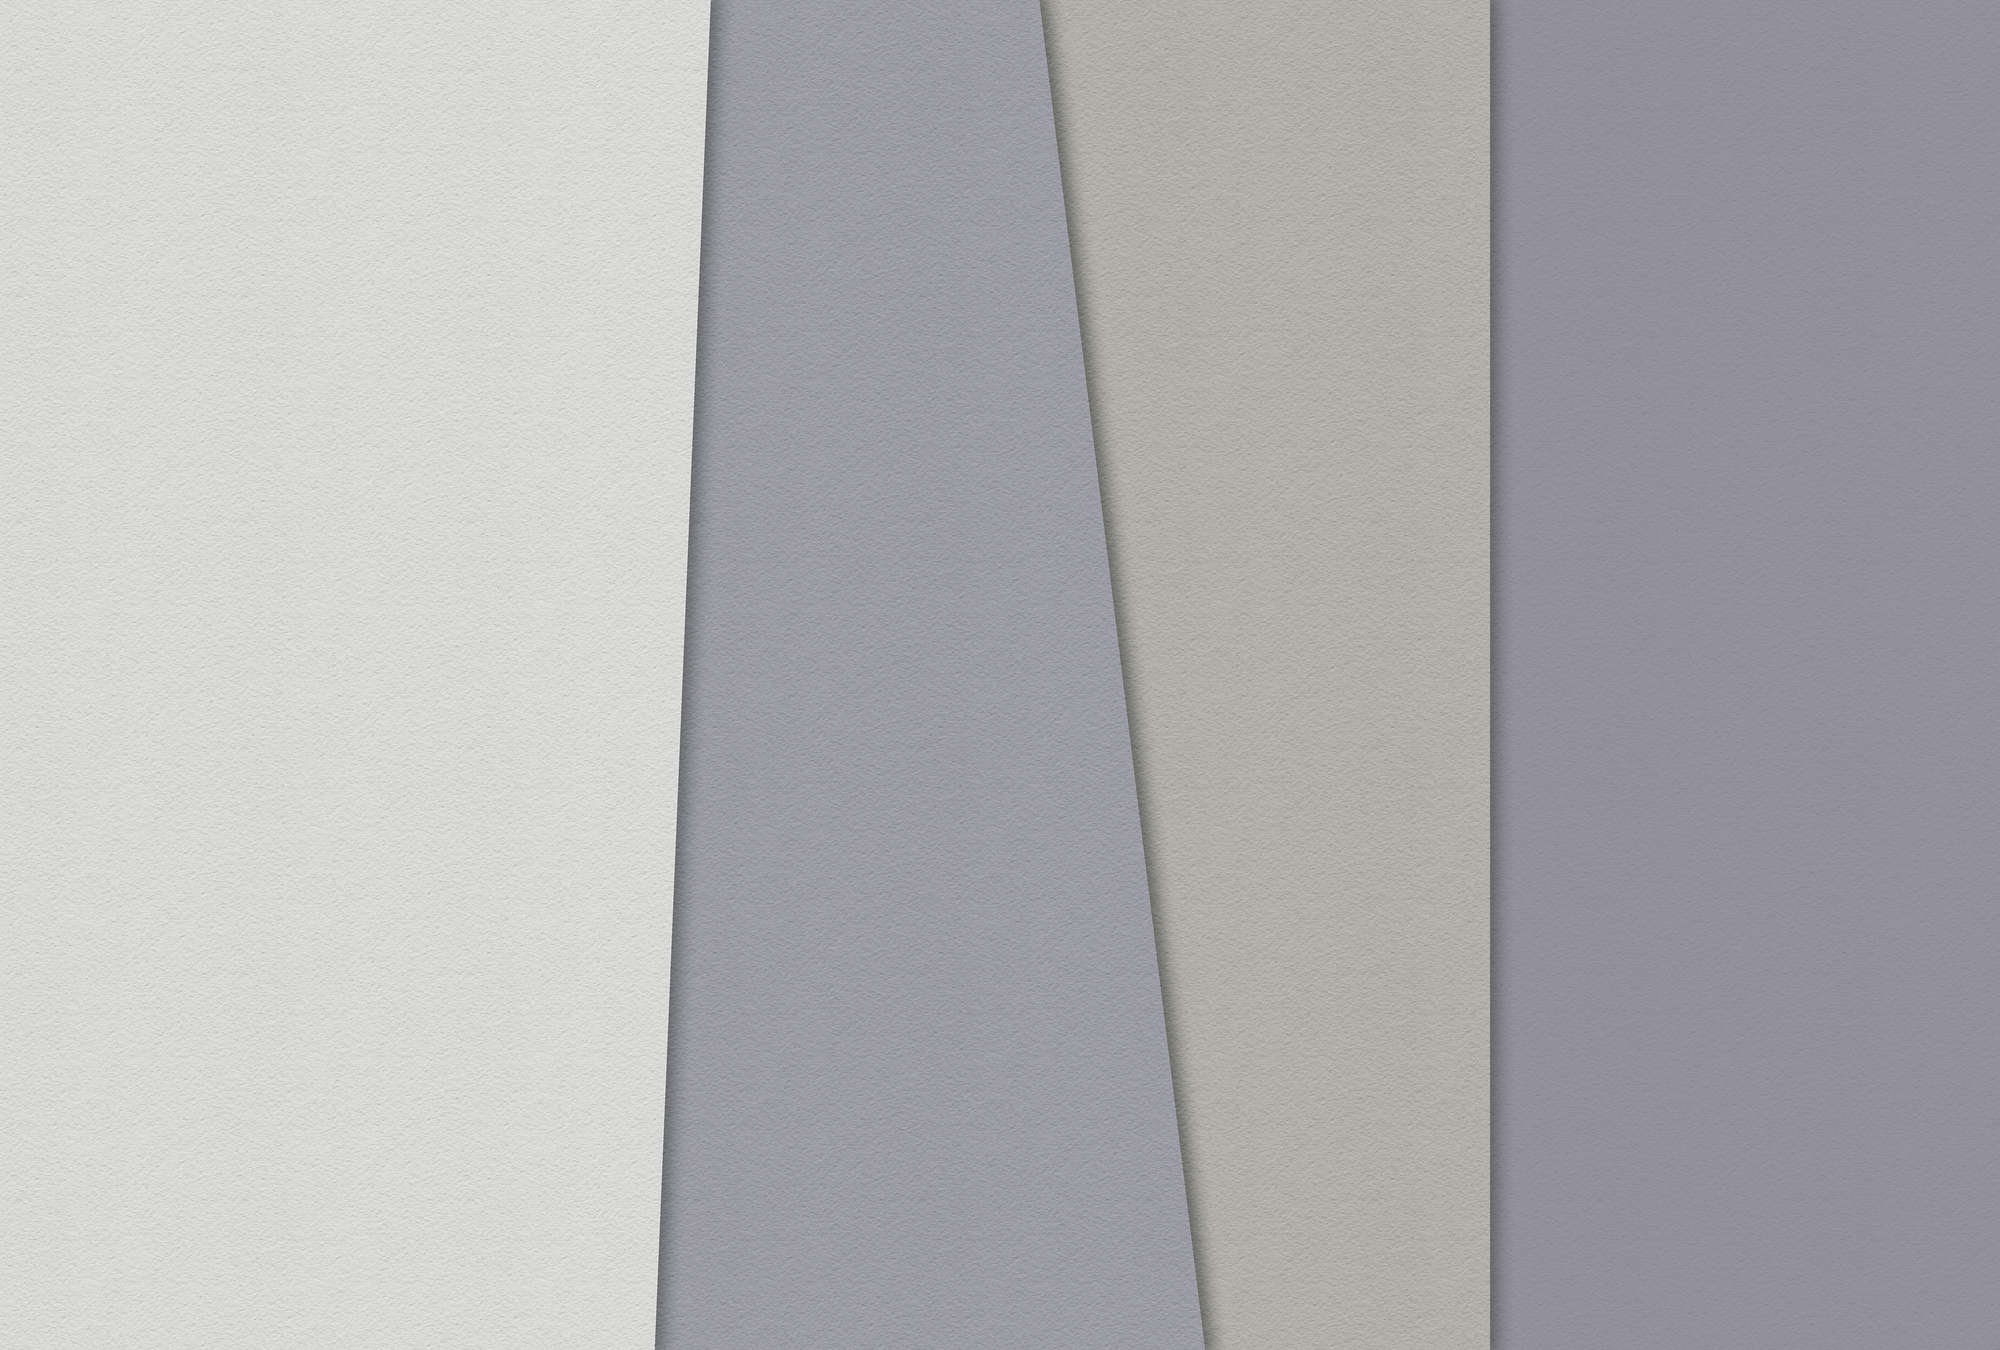             Layered paper 2 - Papier peint graphique, structure de papier à la cuve design minimaliste - crème, vert | Premium intissé lisse
        